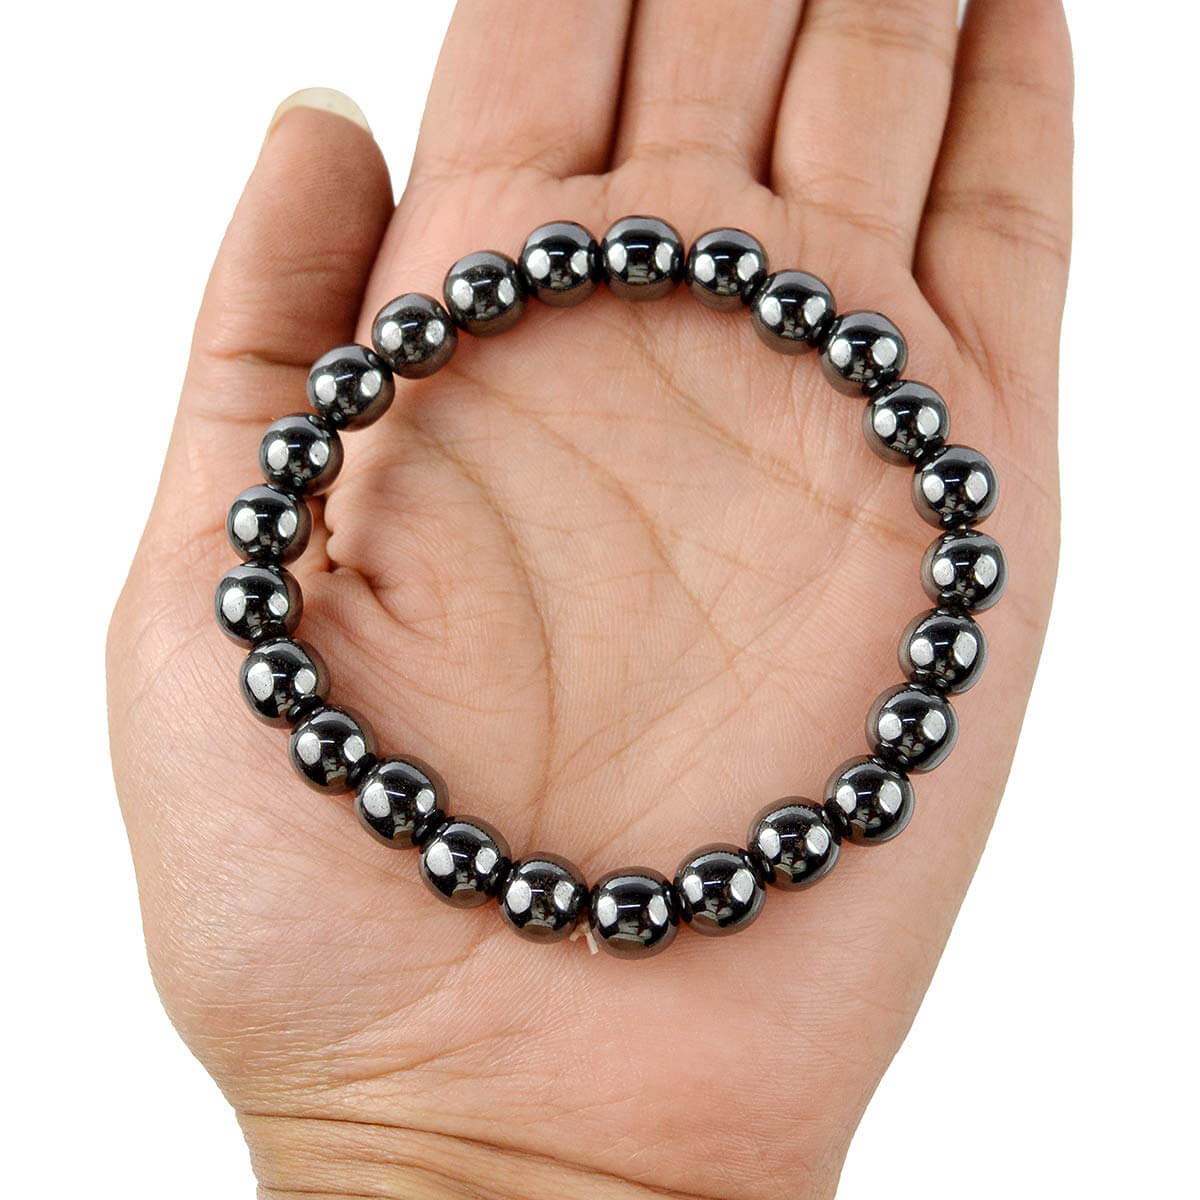 Hematite Bracelet for Grounding & Protection - 8mm Beads